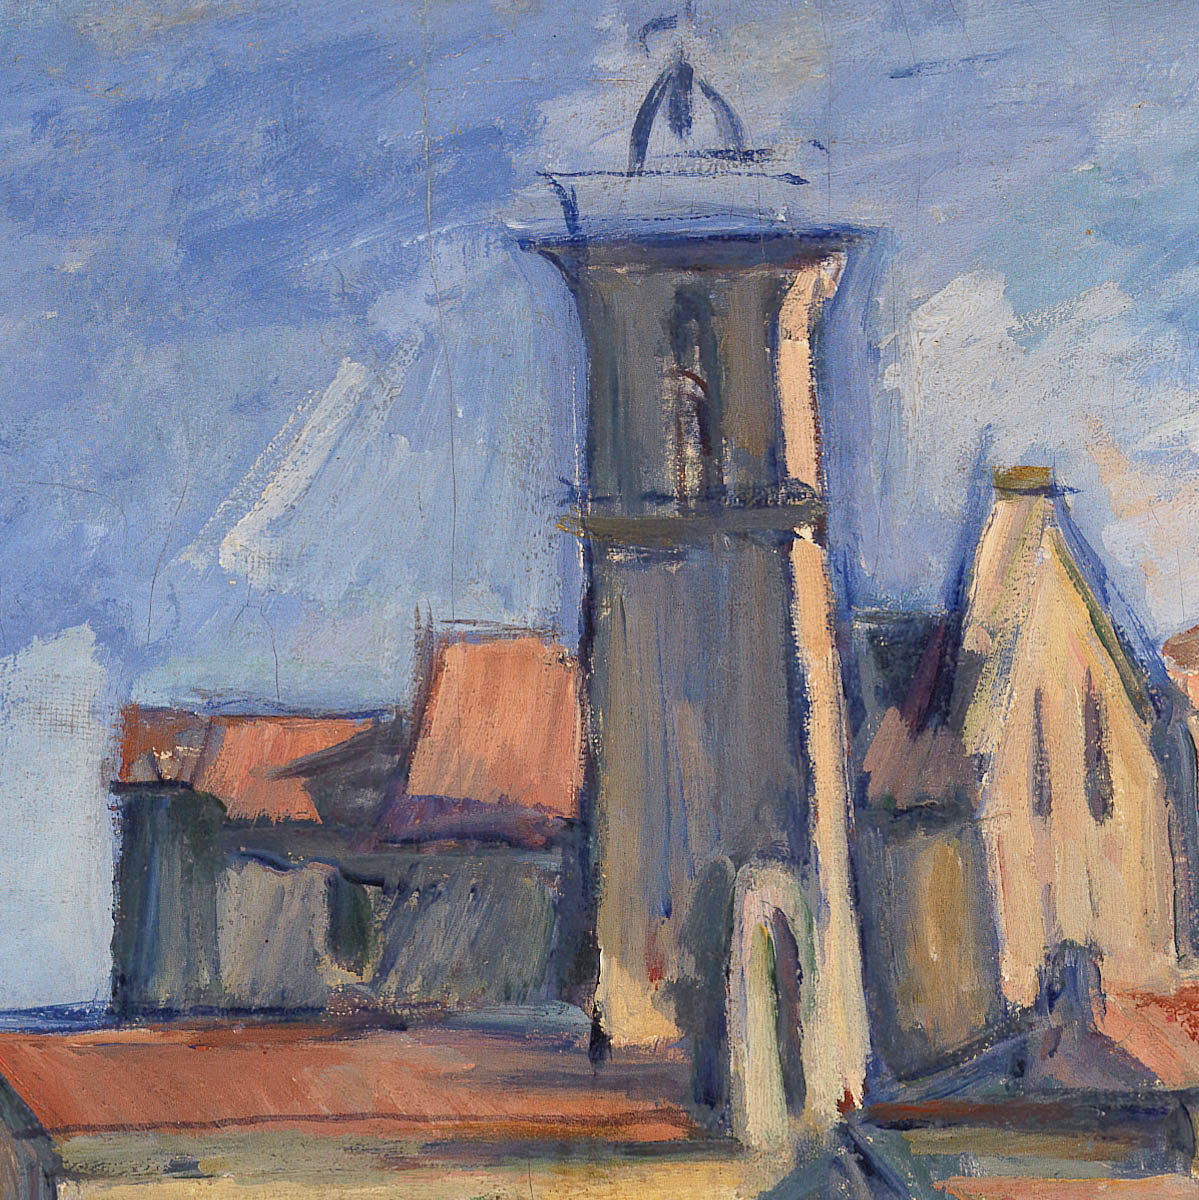 "Gardanne" by Paul Cézanne on Canvas, Aluminium, Acrylic, Framed Prints or Print-only